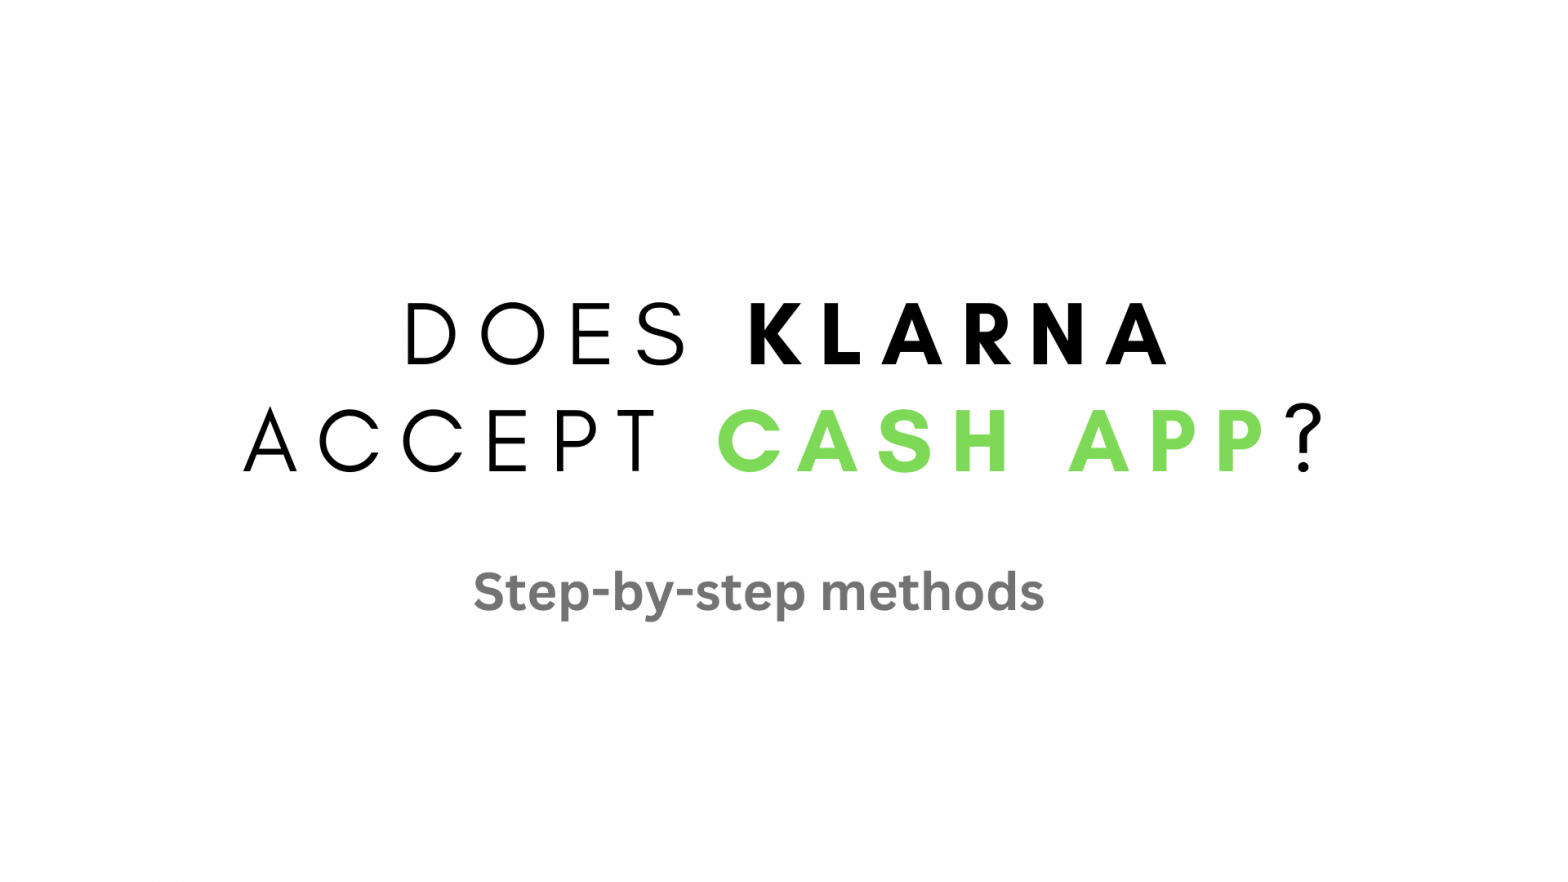 Does Klarna accept Cash App